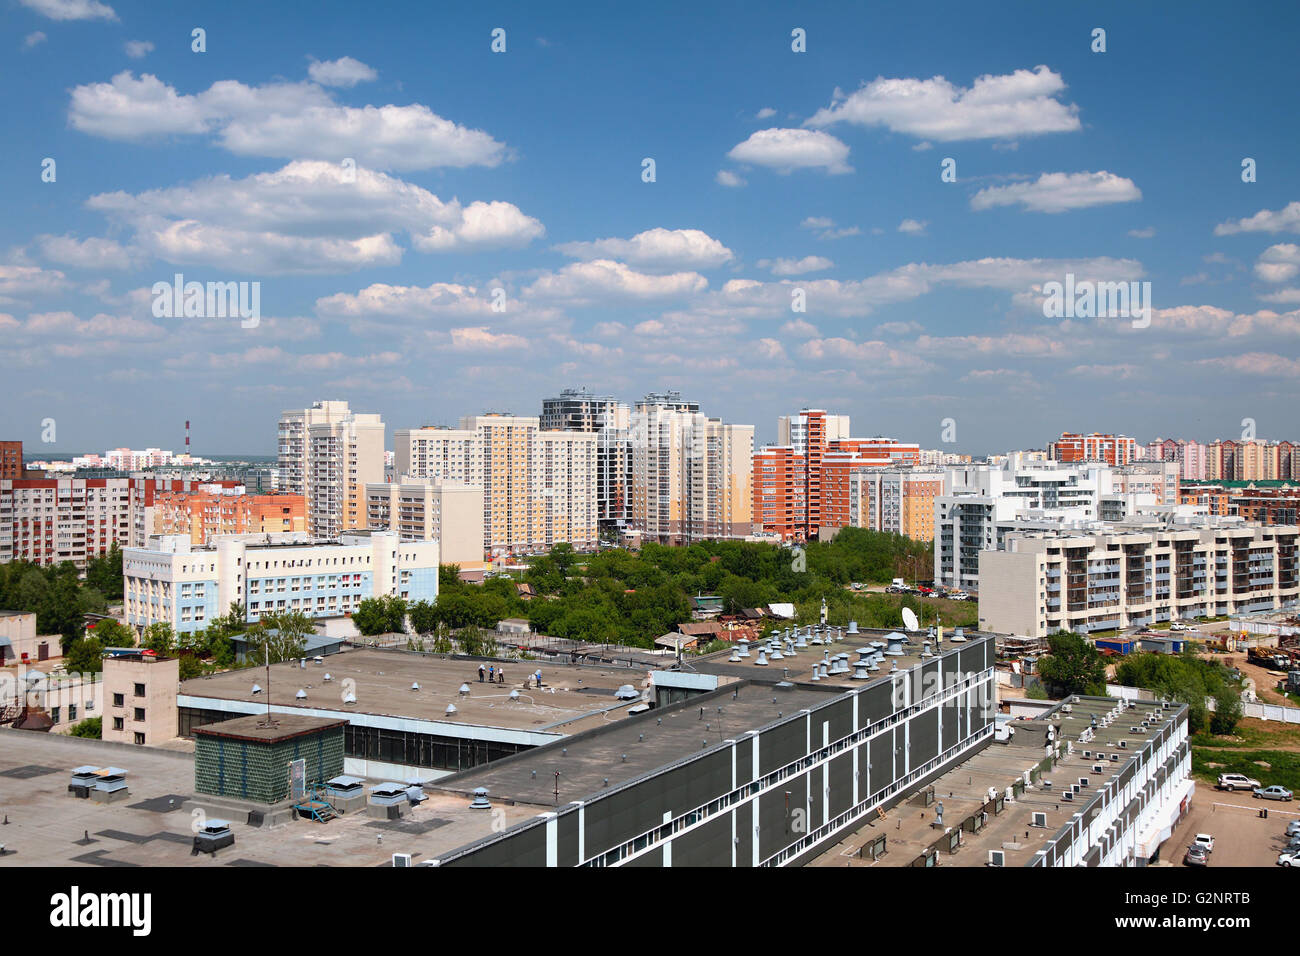 Nouveau quartier de ville. Kazan, Russie, 26-05-2016 Banque D'Images